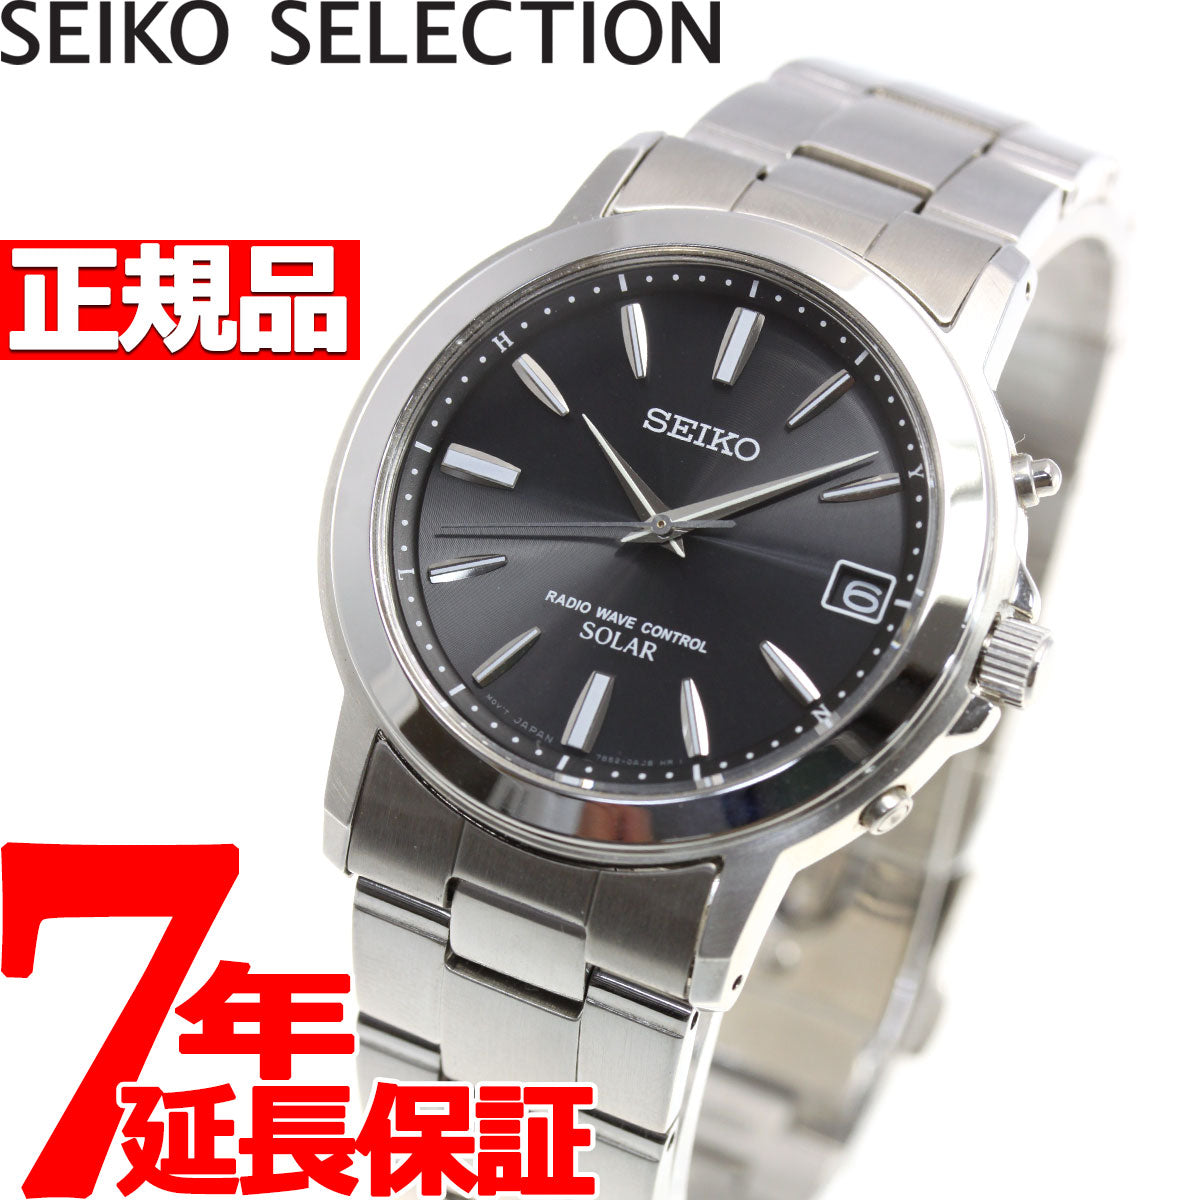 セイコー セレクション SEIKO SELECTION 電波 ソーラー 電波時計 腕時計 メンズ ペアウォッチ SBTM169